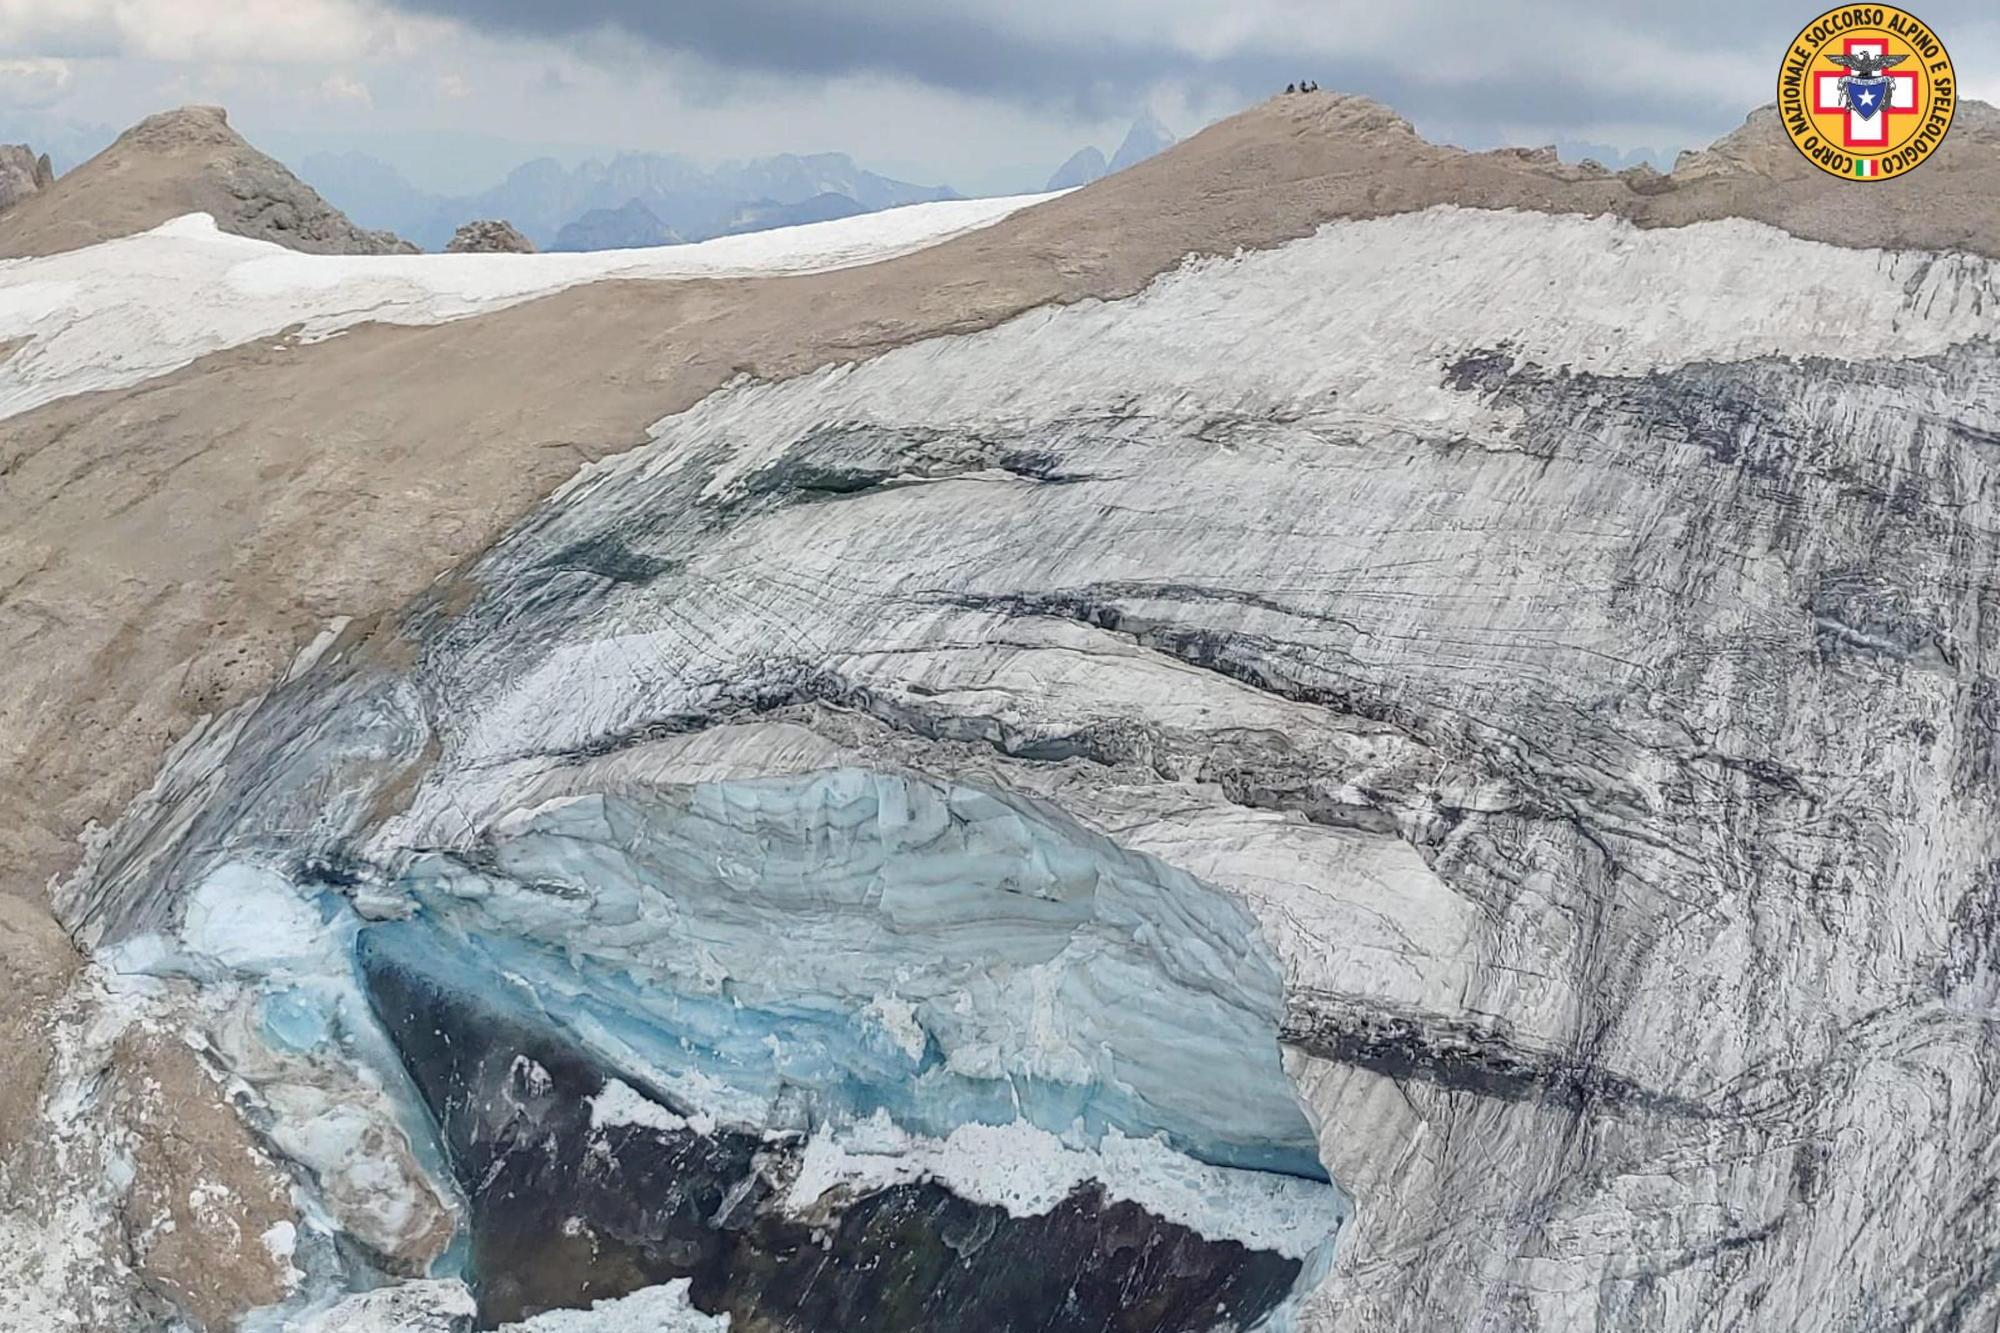 Tragedia in montagna nella giornata di domenica 3 luglio, quando un enorme blocco di ghiaccio si è staccato dalla cima della Marmolada